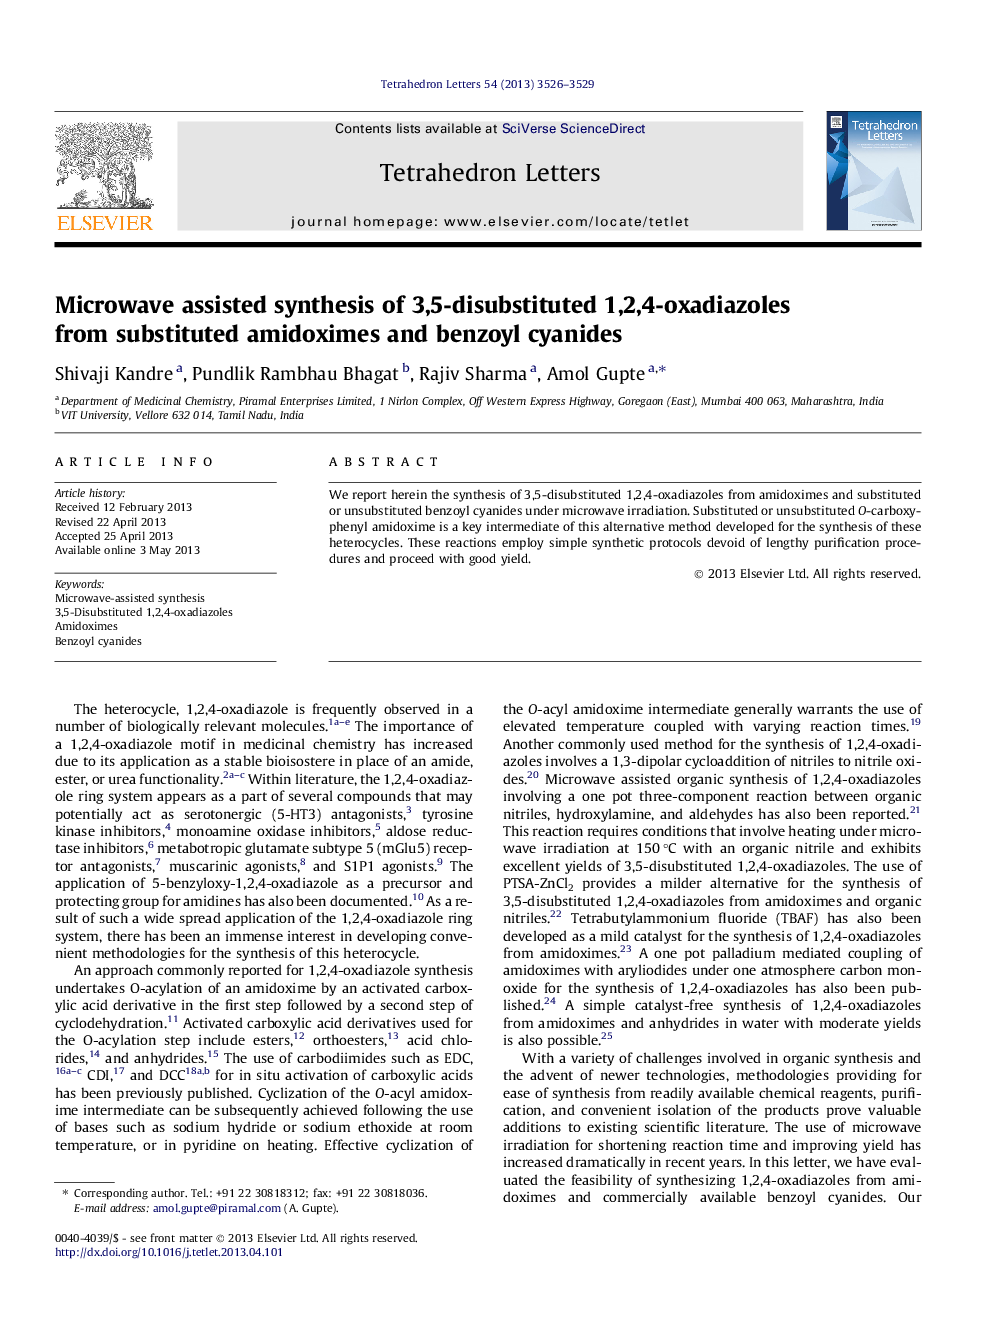 سنتز مایکروویو از سنتز های 1،2،4-اکسیدیاازول 3،5-دیسپتیک از آمیدوکسیام های جایگزین و بنزوئی سیانید 